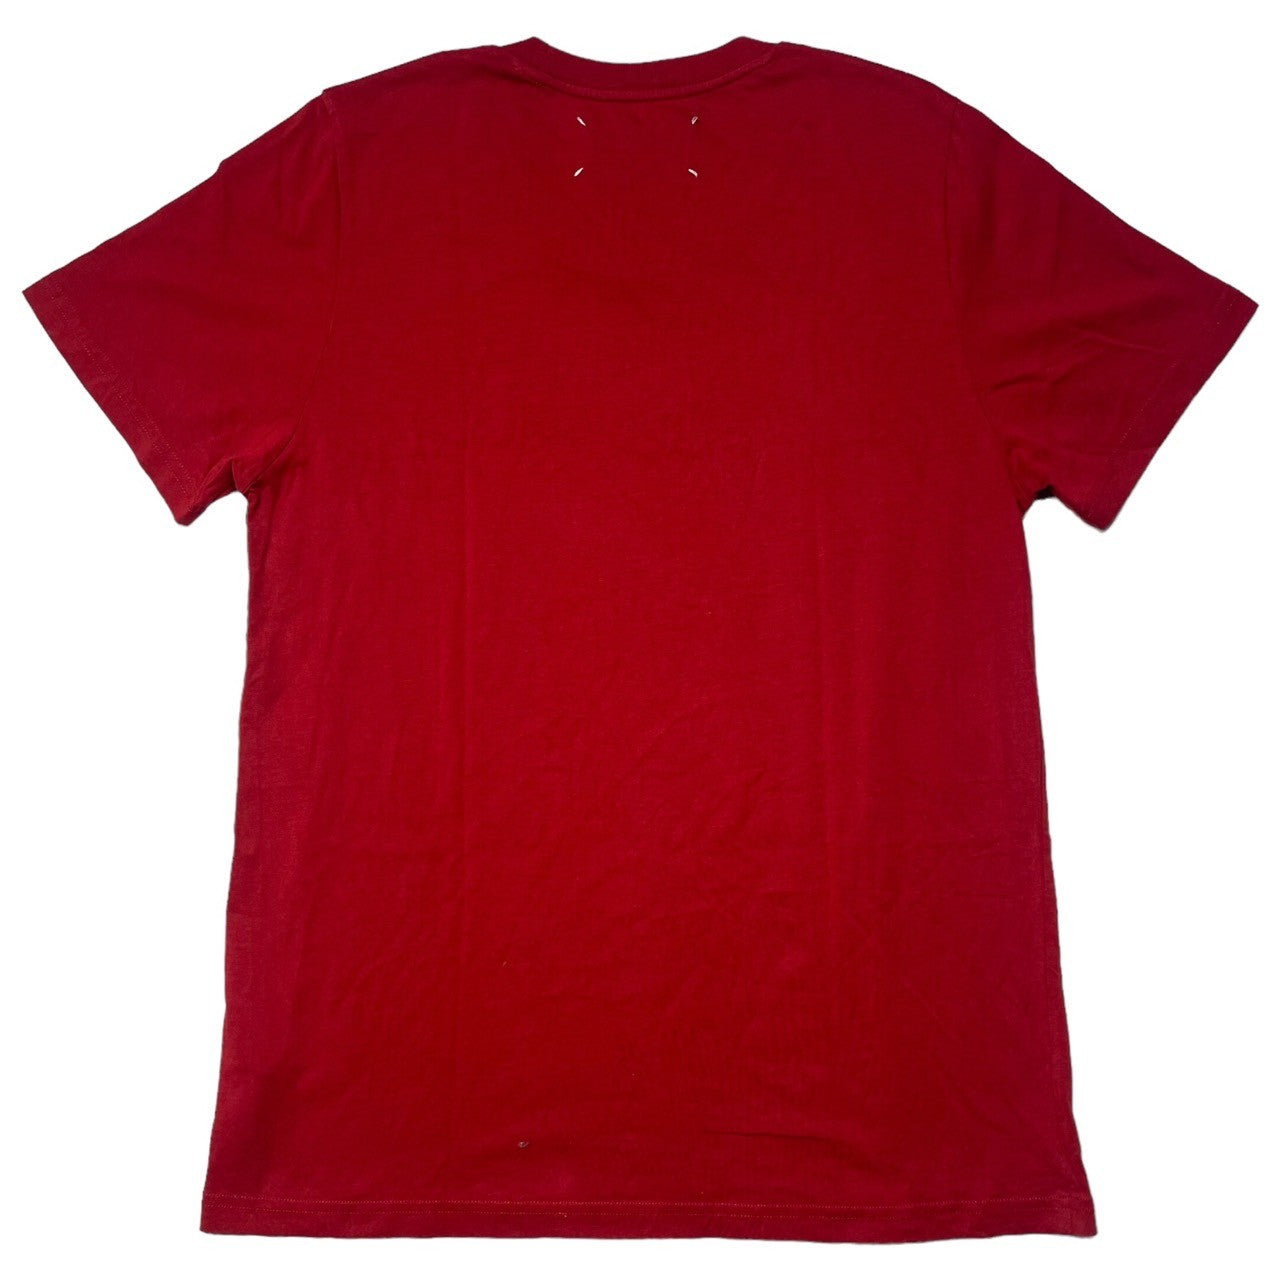 MAISON MARGIELA(メゾンマルジェラ) 15SS Crew neck S/S T-shirt クルーネック 半袖 Tシャツ S30GC0504 46(M程度) レッド